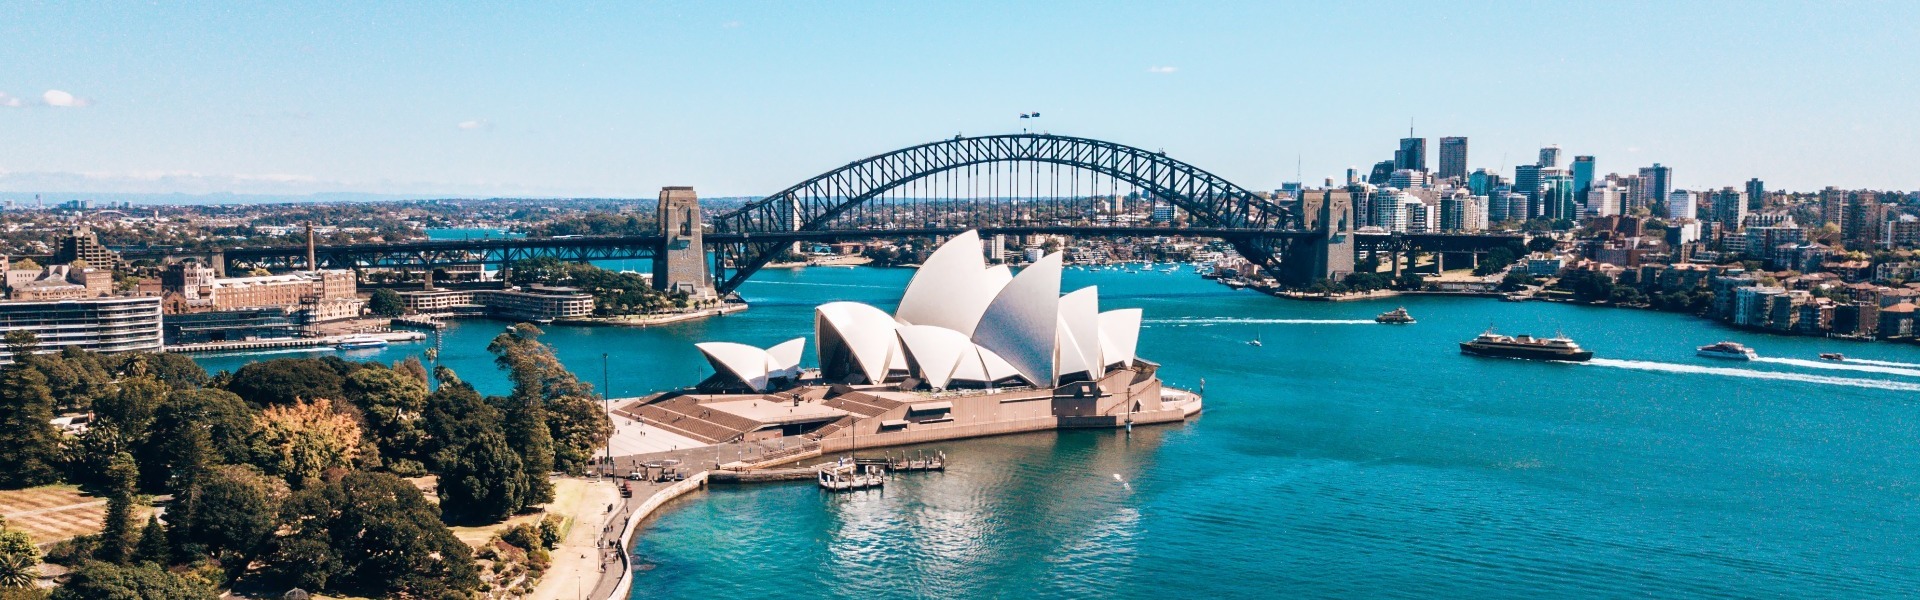 Australia Holidays & Tours - Tailored Journeys